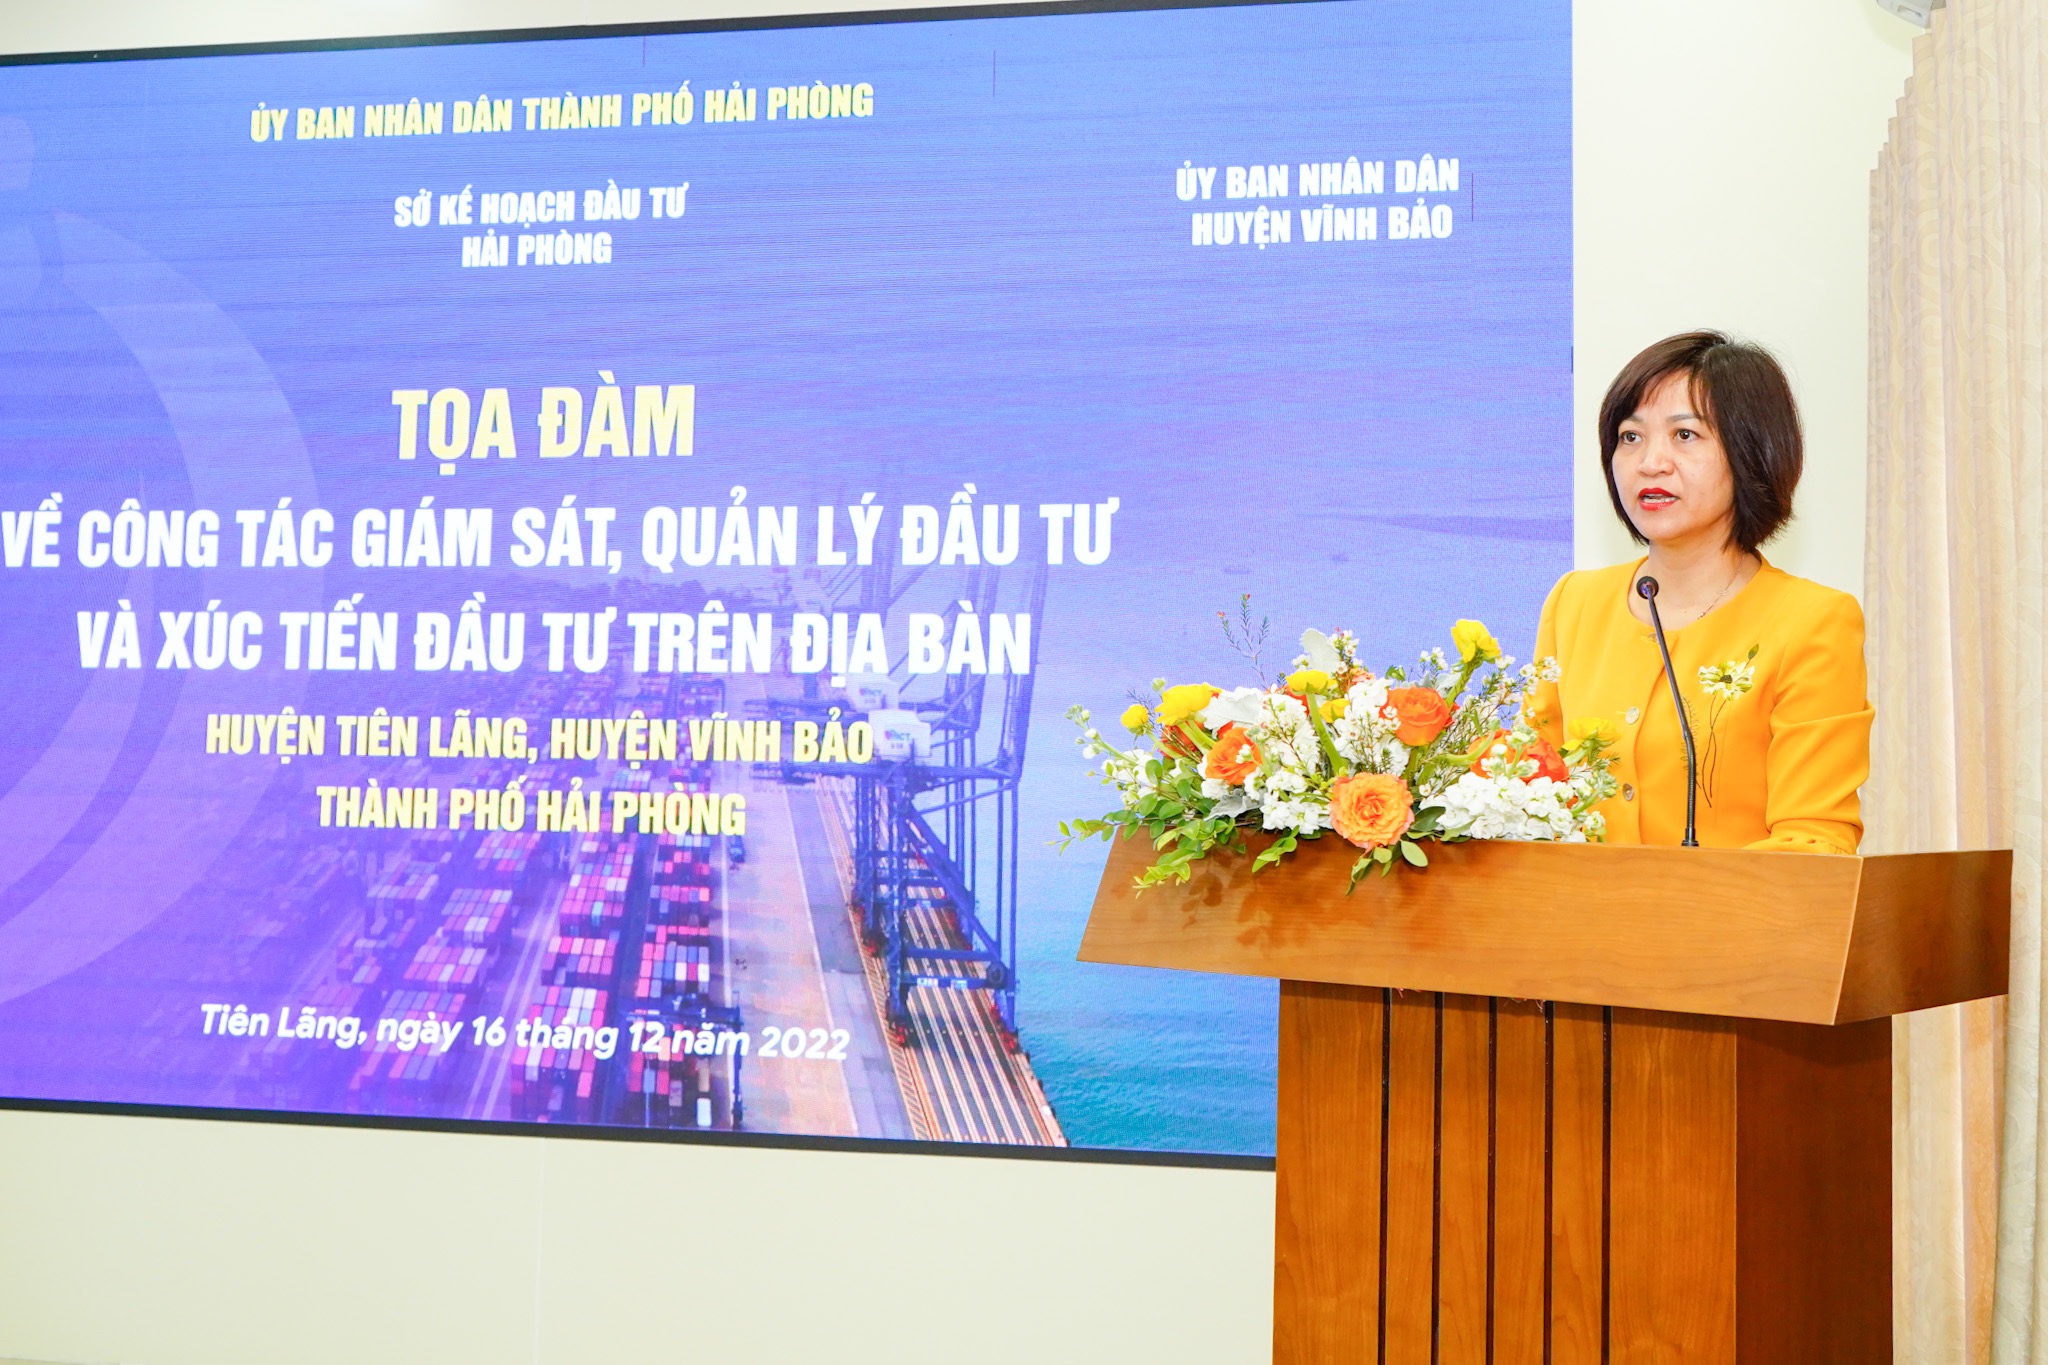 Bà Trần Thị Hải Yến, Phó Giám đốc Sở Kế hoạch và Đầu tư Hải Phòng phát biểu khai mạc